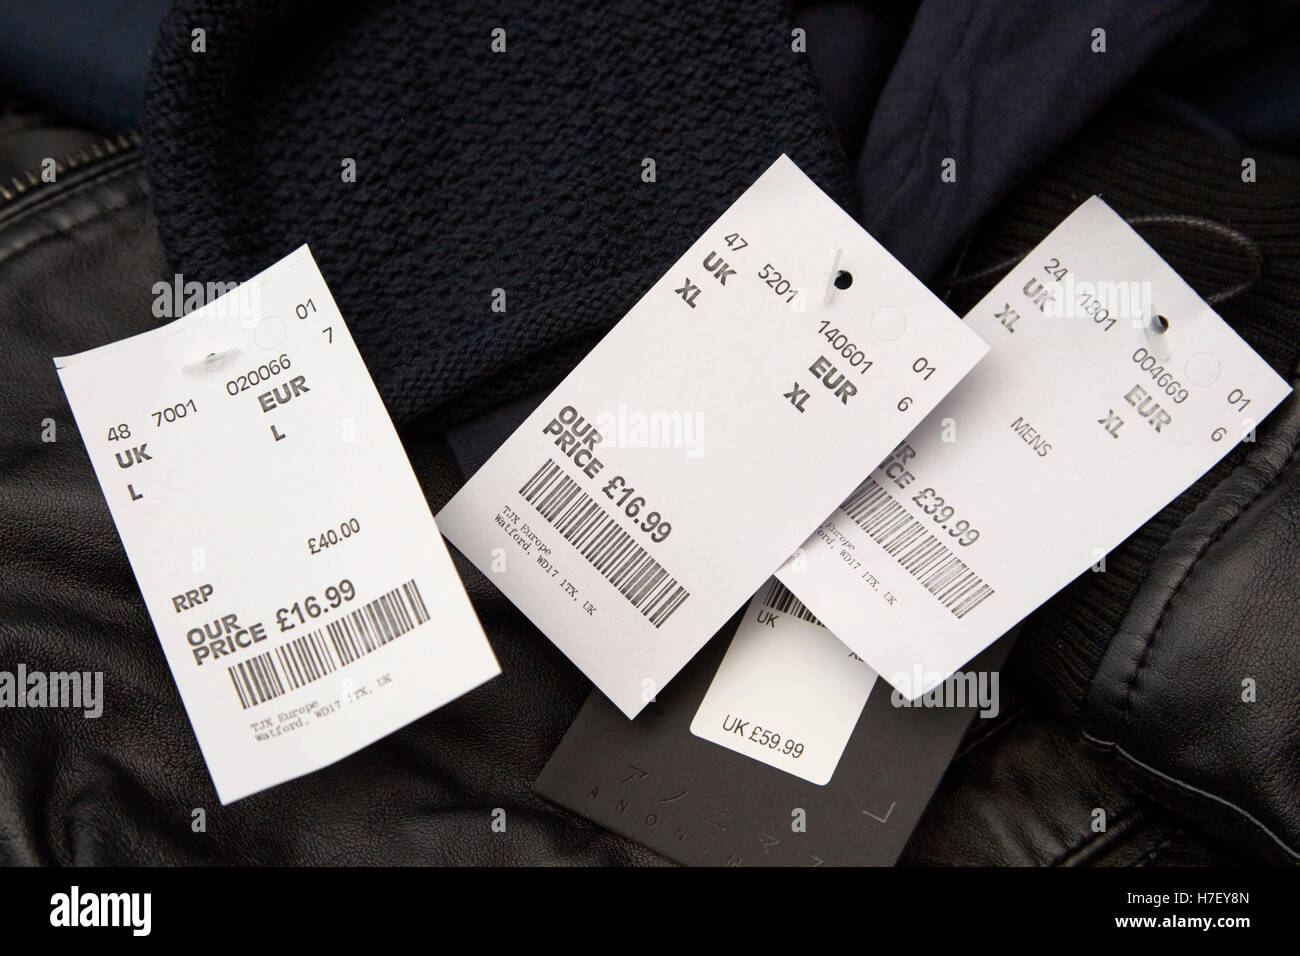 Tkmax prezzo ridotto di tag per abbigliamento Foto Stock